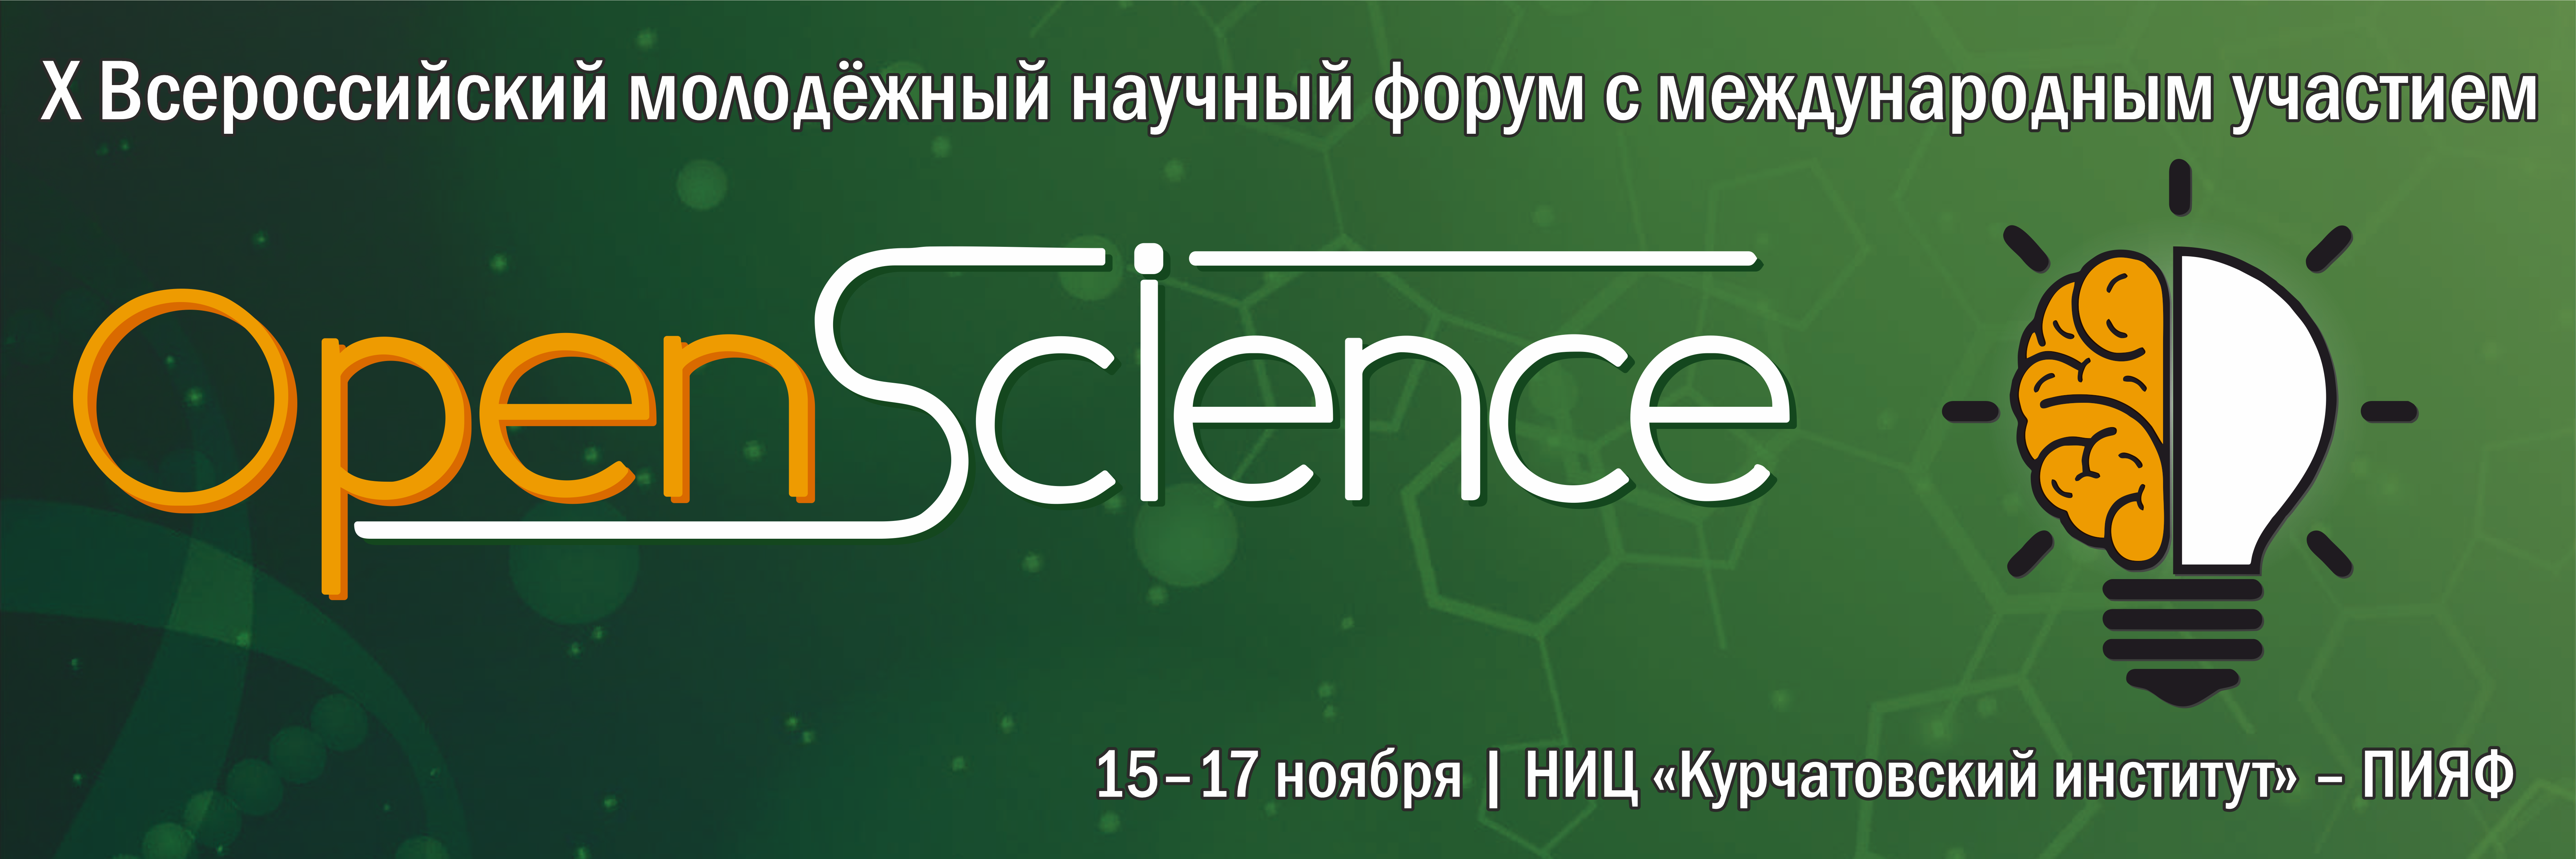 Развитие ключевых направлений российской науки обсудят в Гатчине молодые ученые